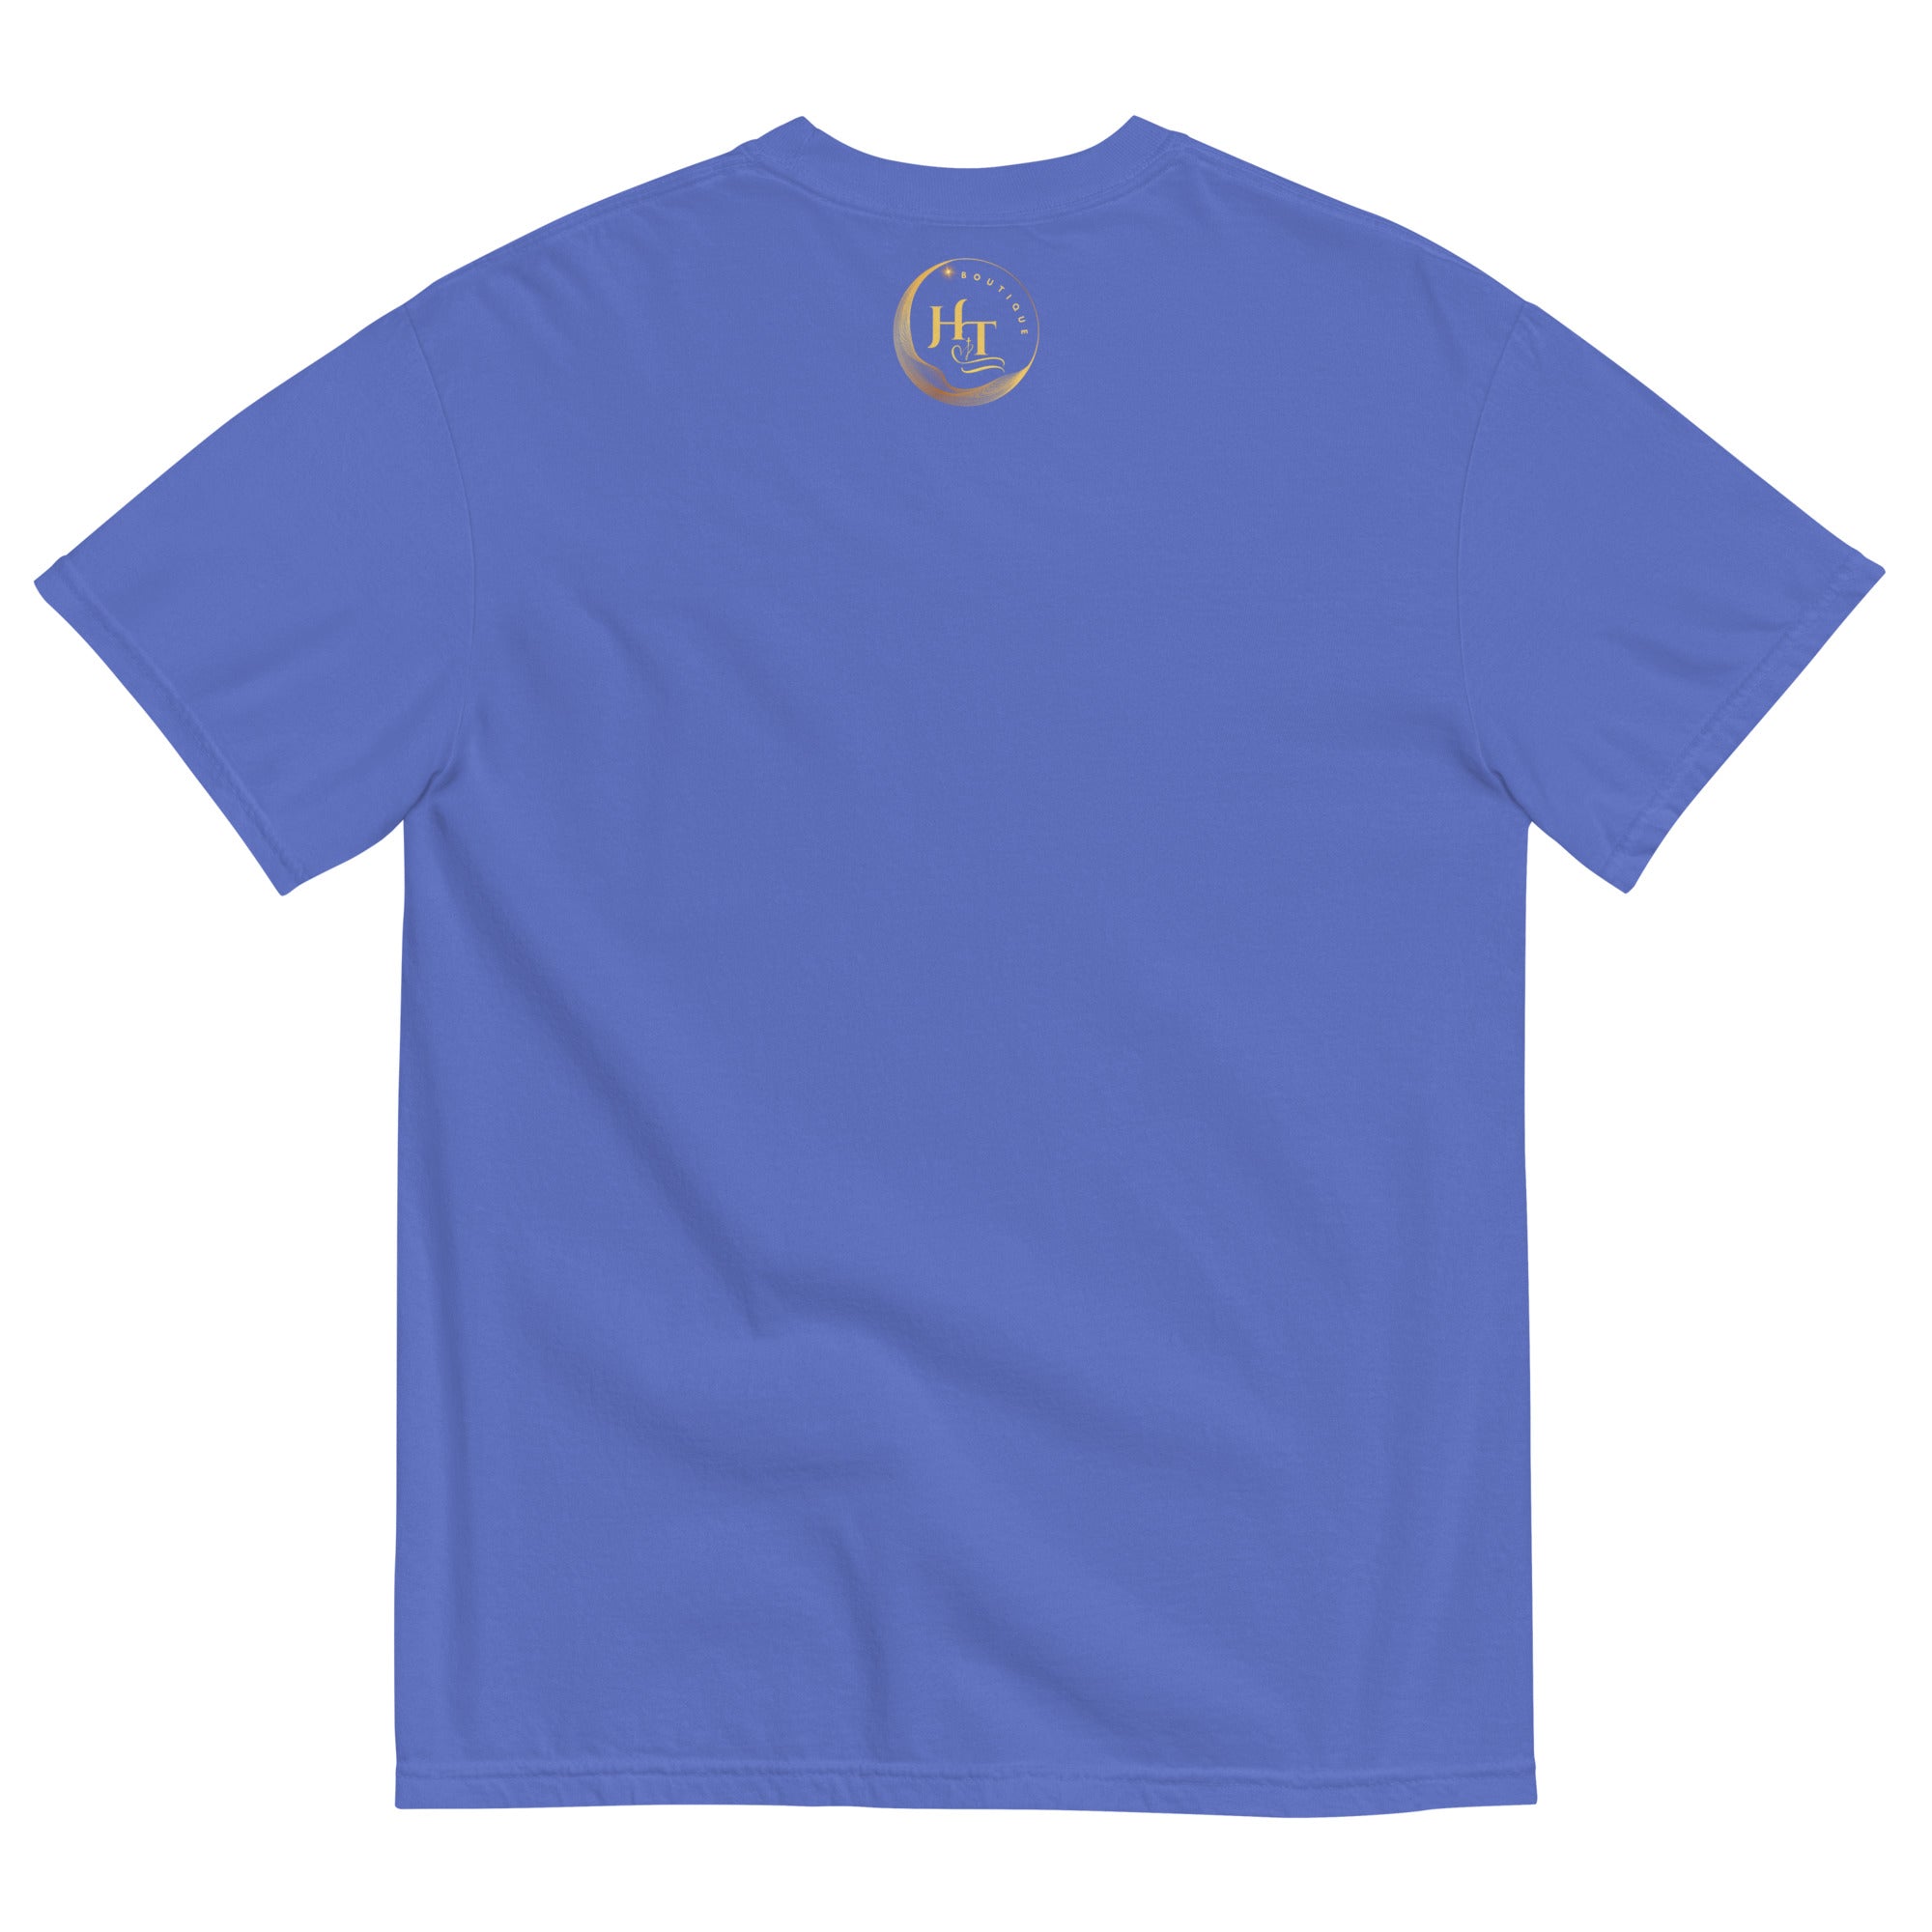 The Heart That Listens Unisex garment-dyed heavyweight t-shirt